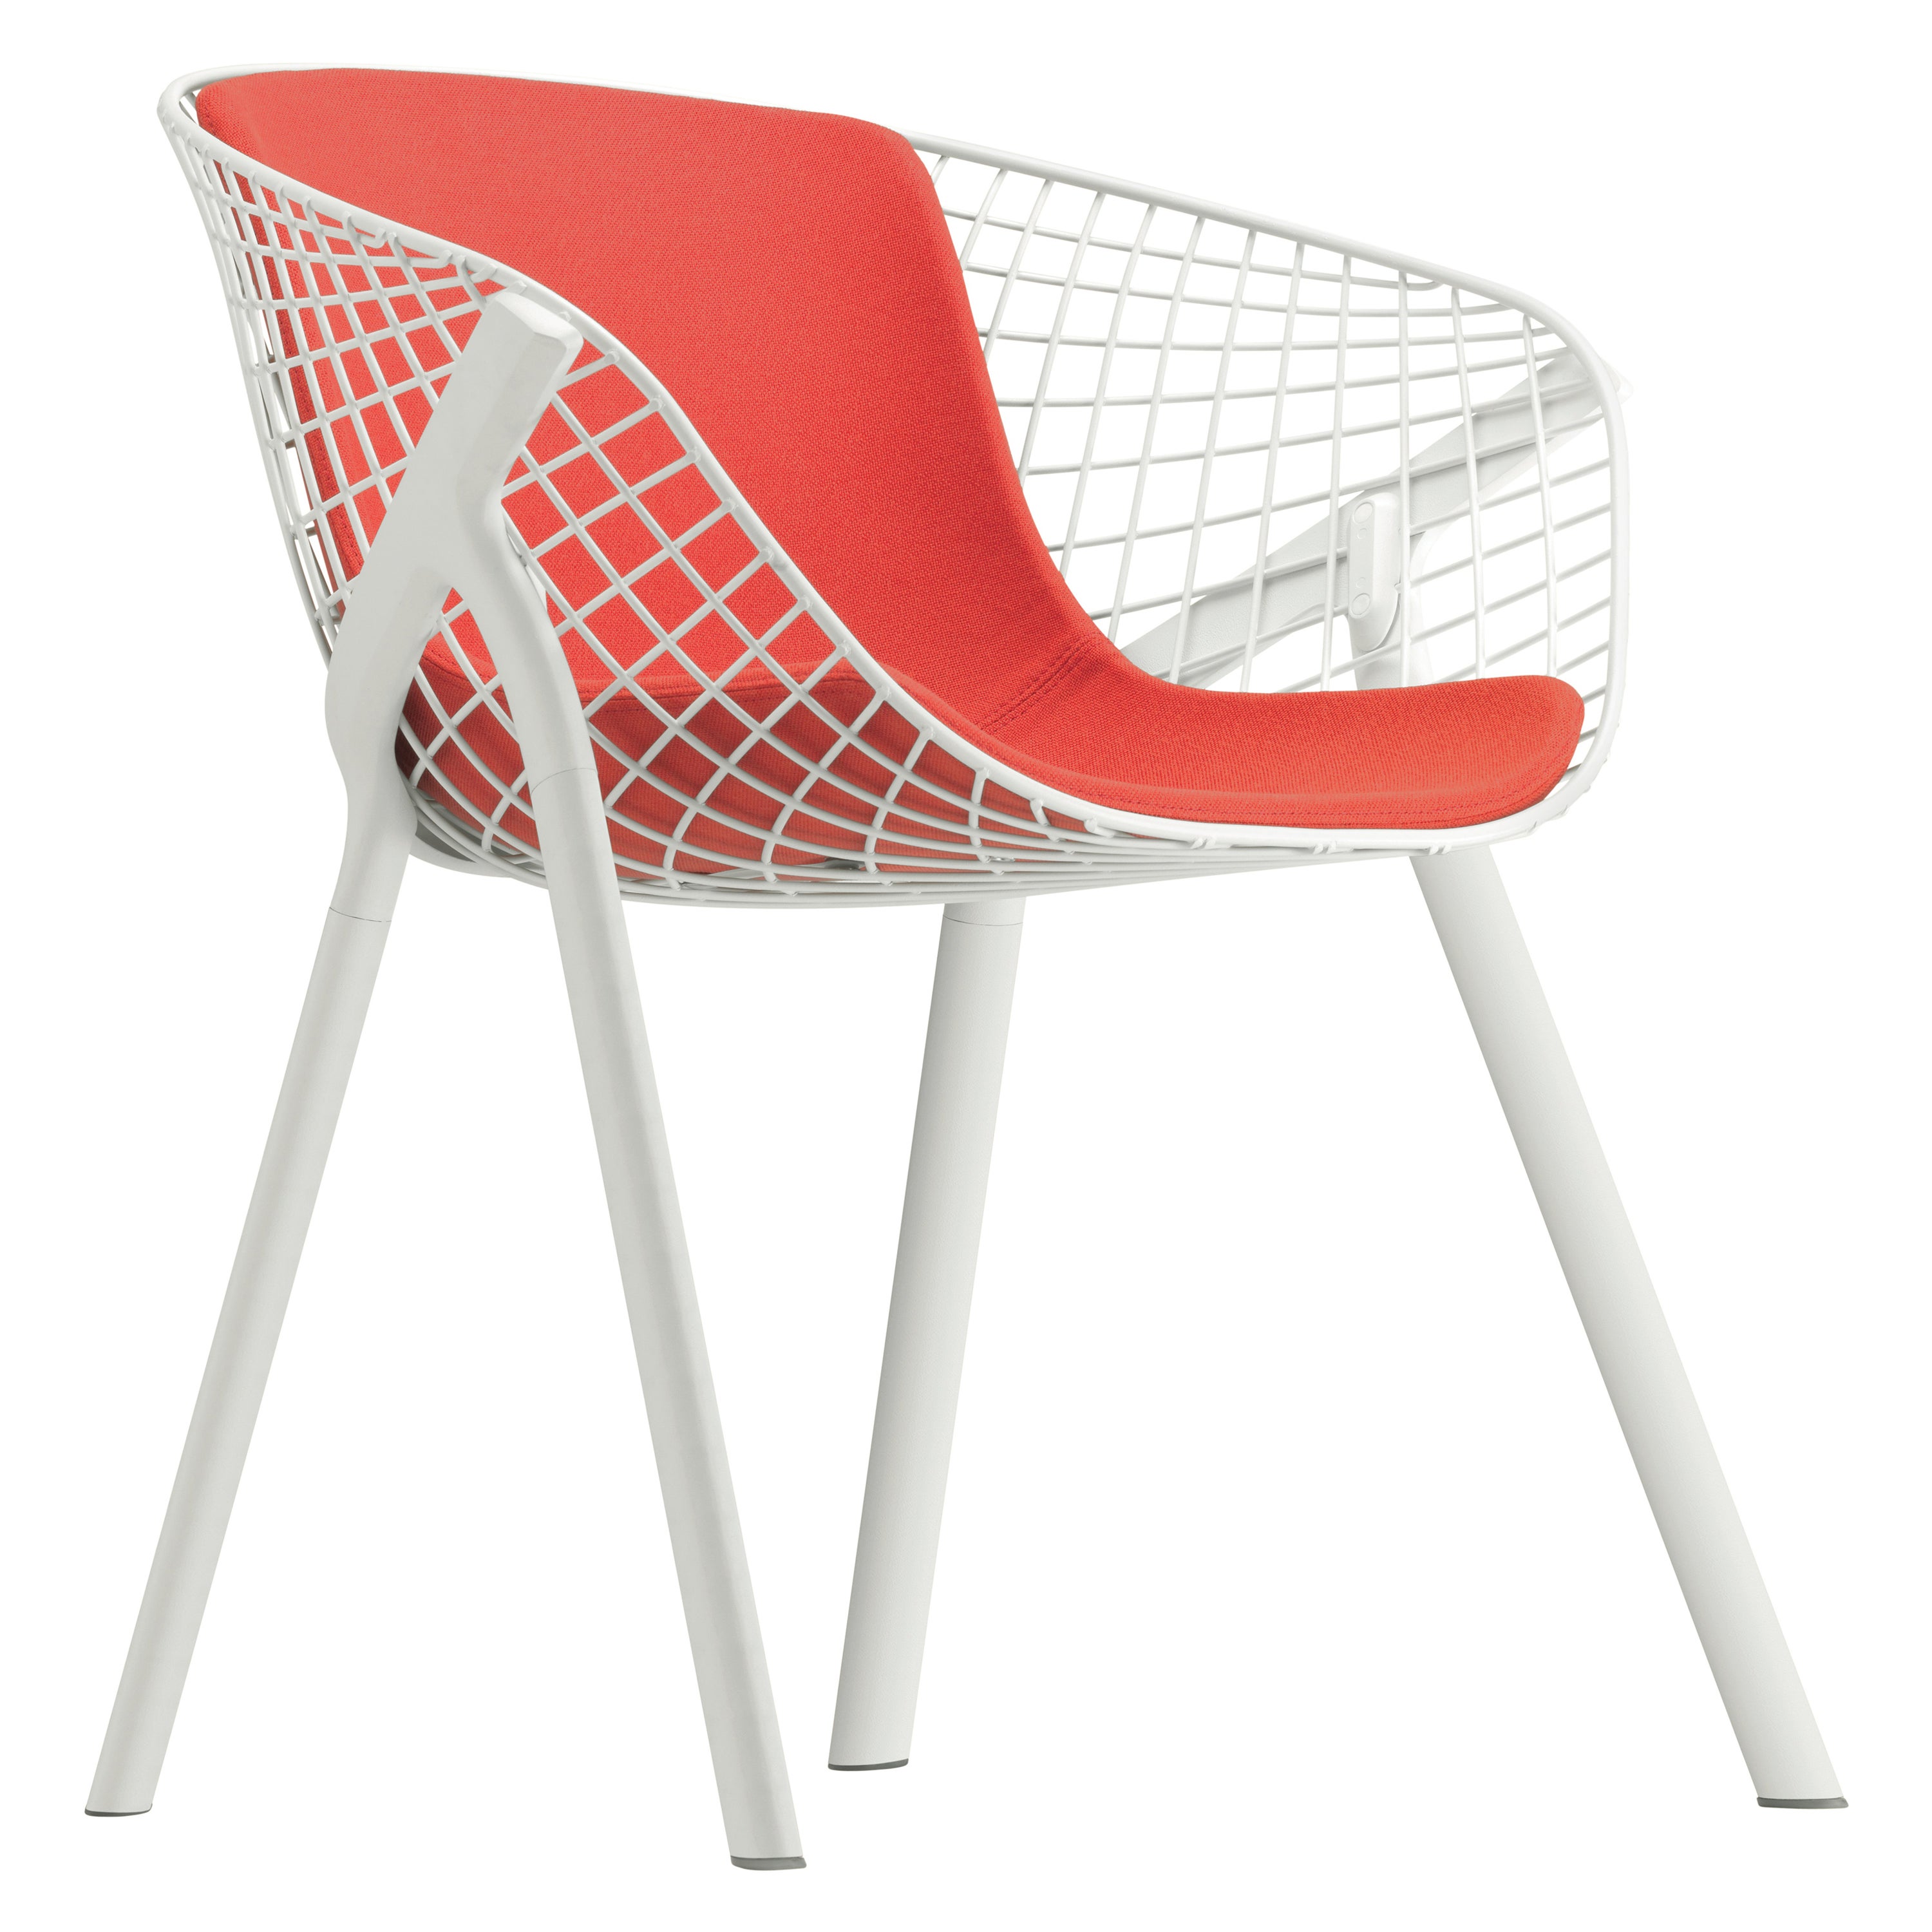 Alias 040 Kobi-Stuhl mit mittelgroßer Polsterung aus orange-weiß lackiertem Aluminiumrahmen